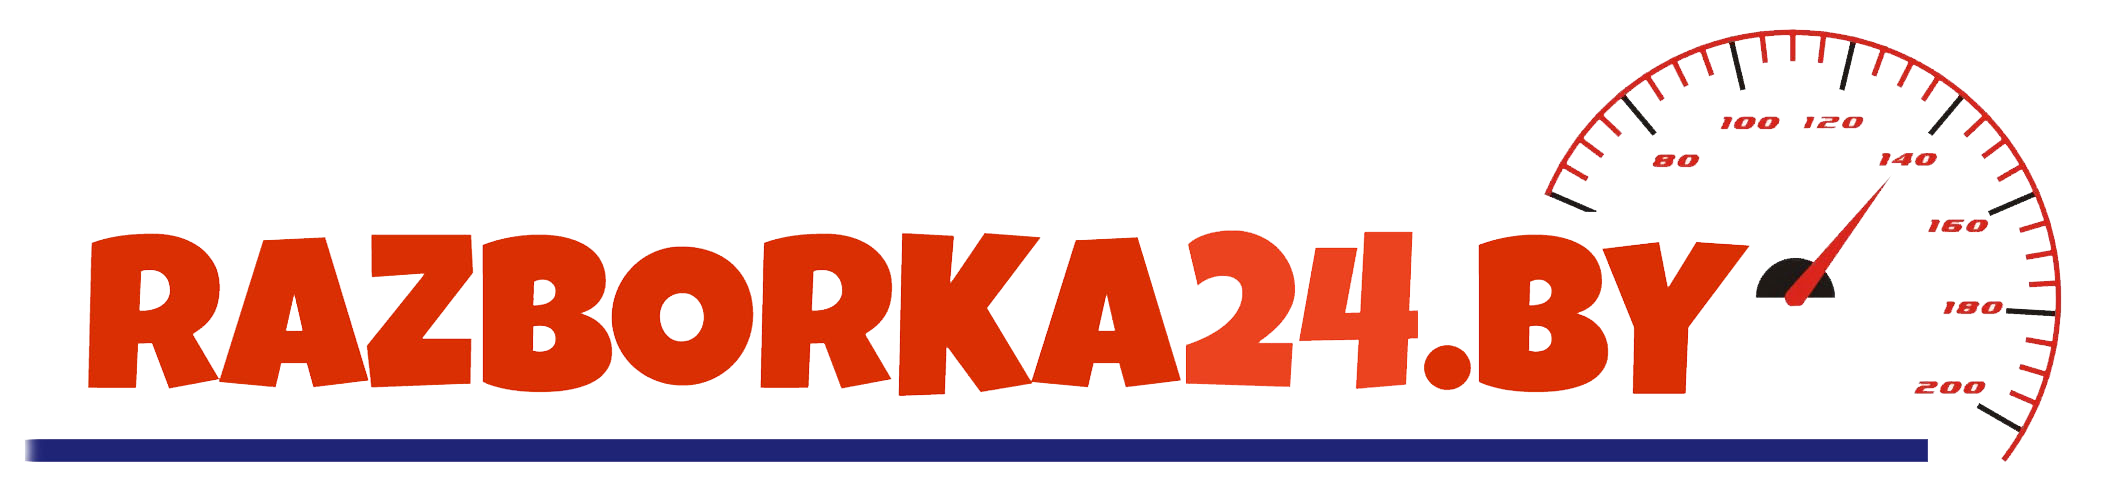 Razborka24.by